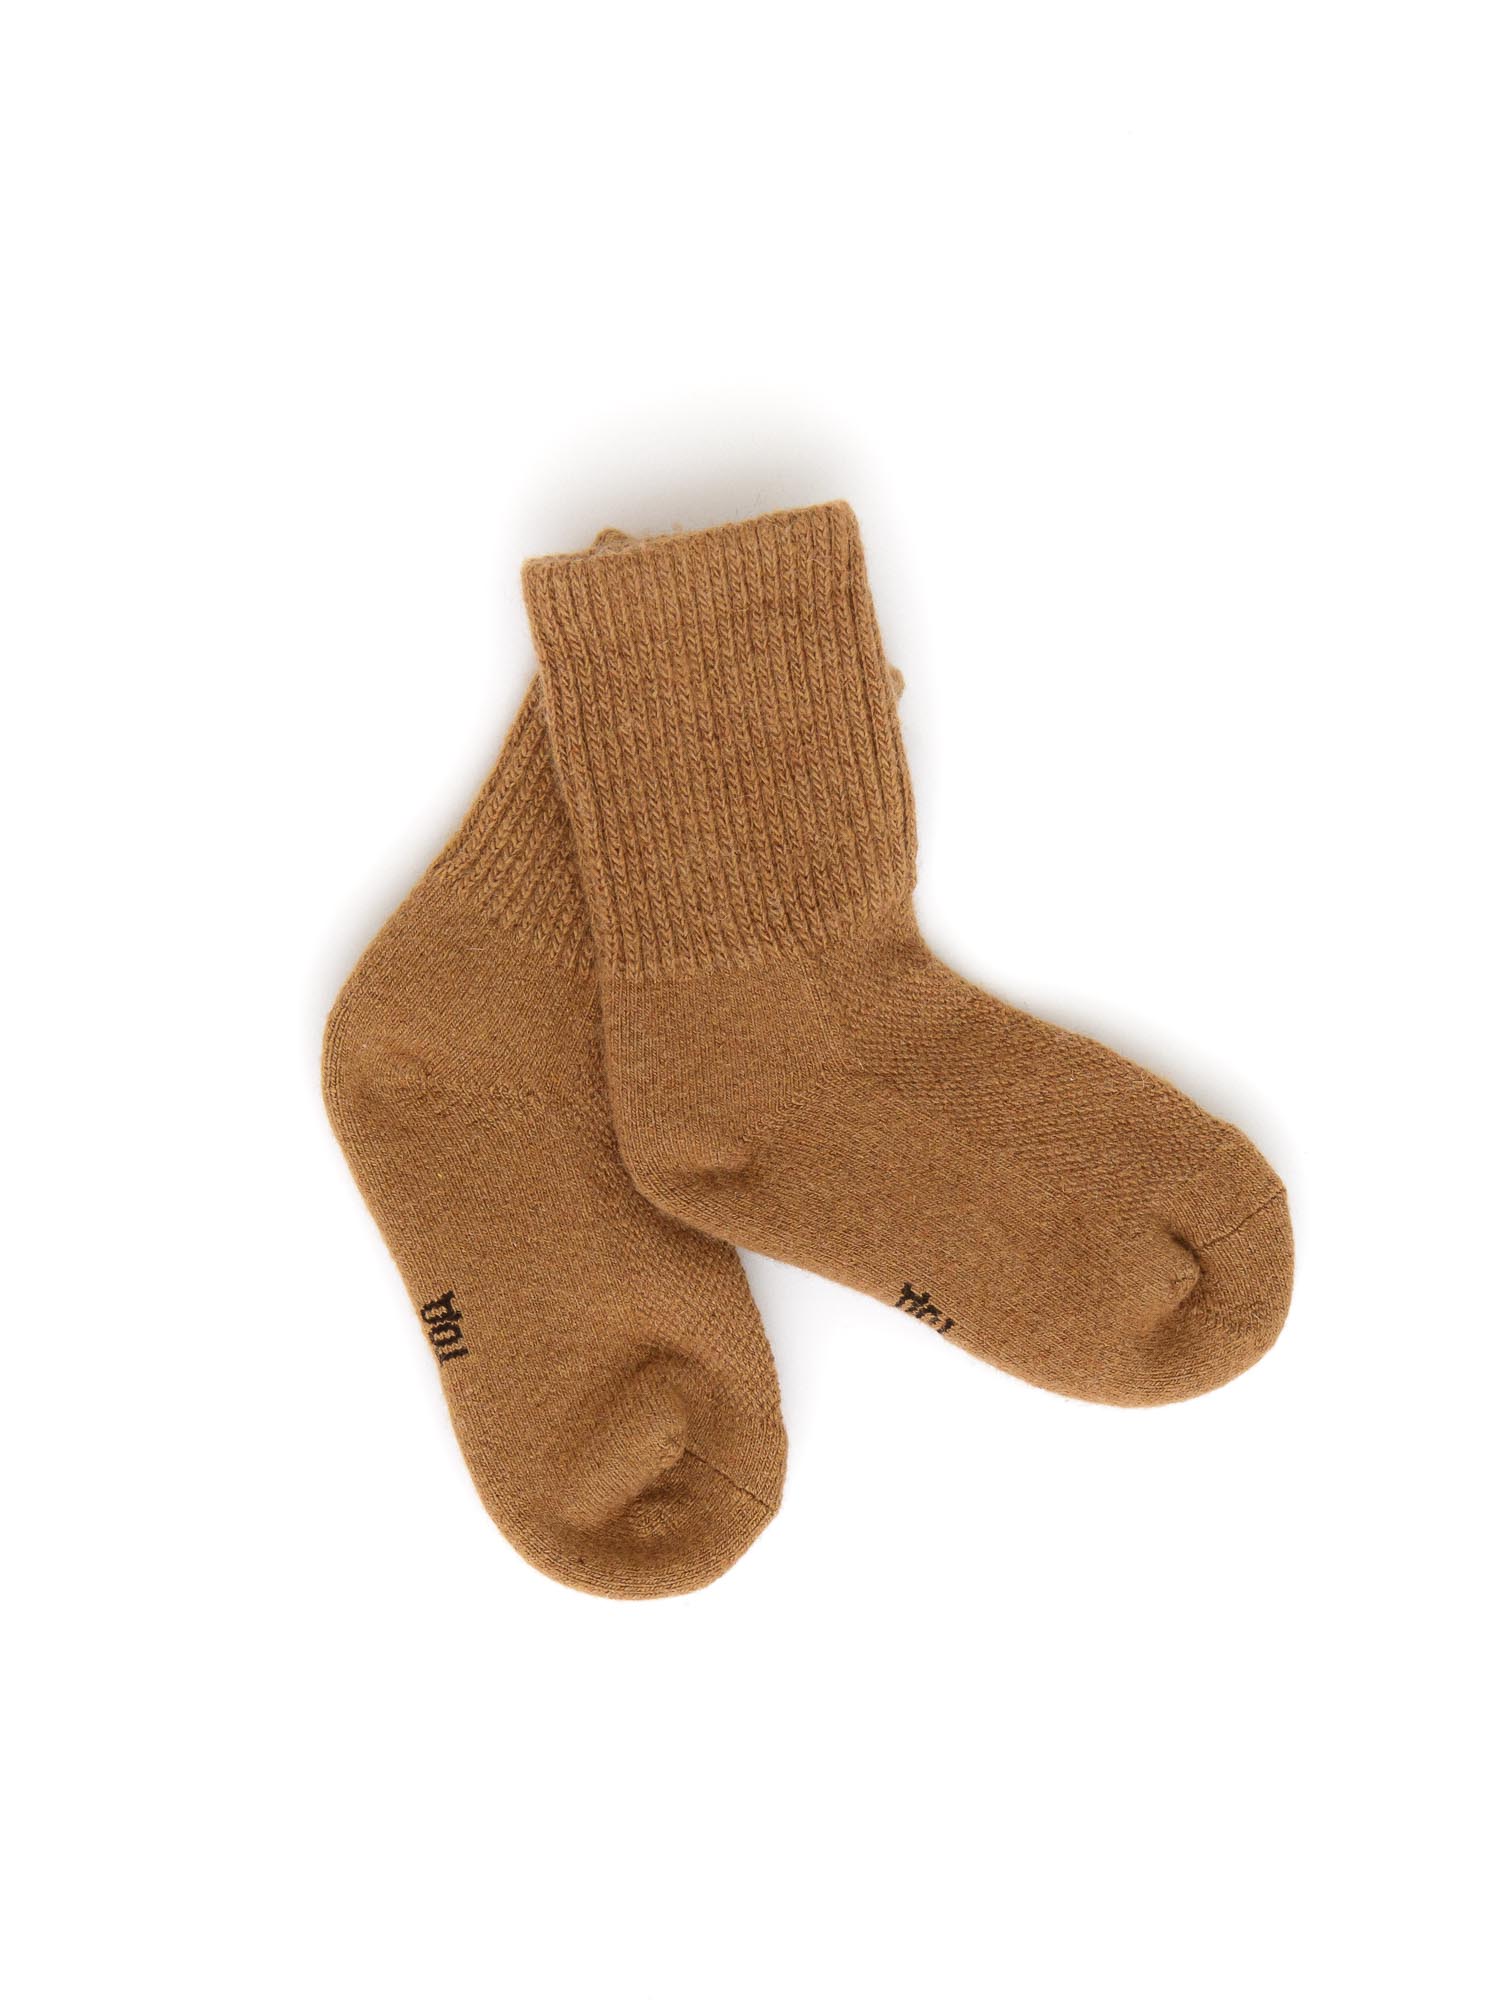 Детские носки из монгольской шерсти 1Р ТОД ОЙМС ХХК, цвет рыжий, размер 1 (10-12 см) - фото 1